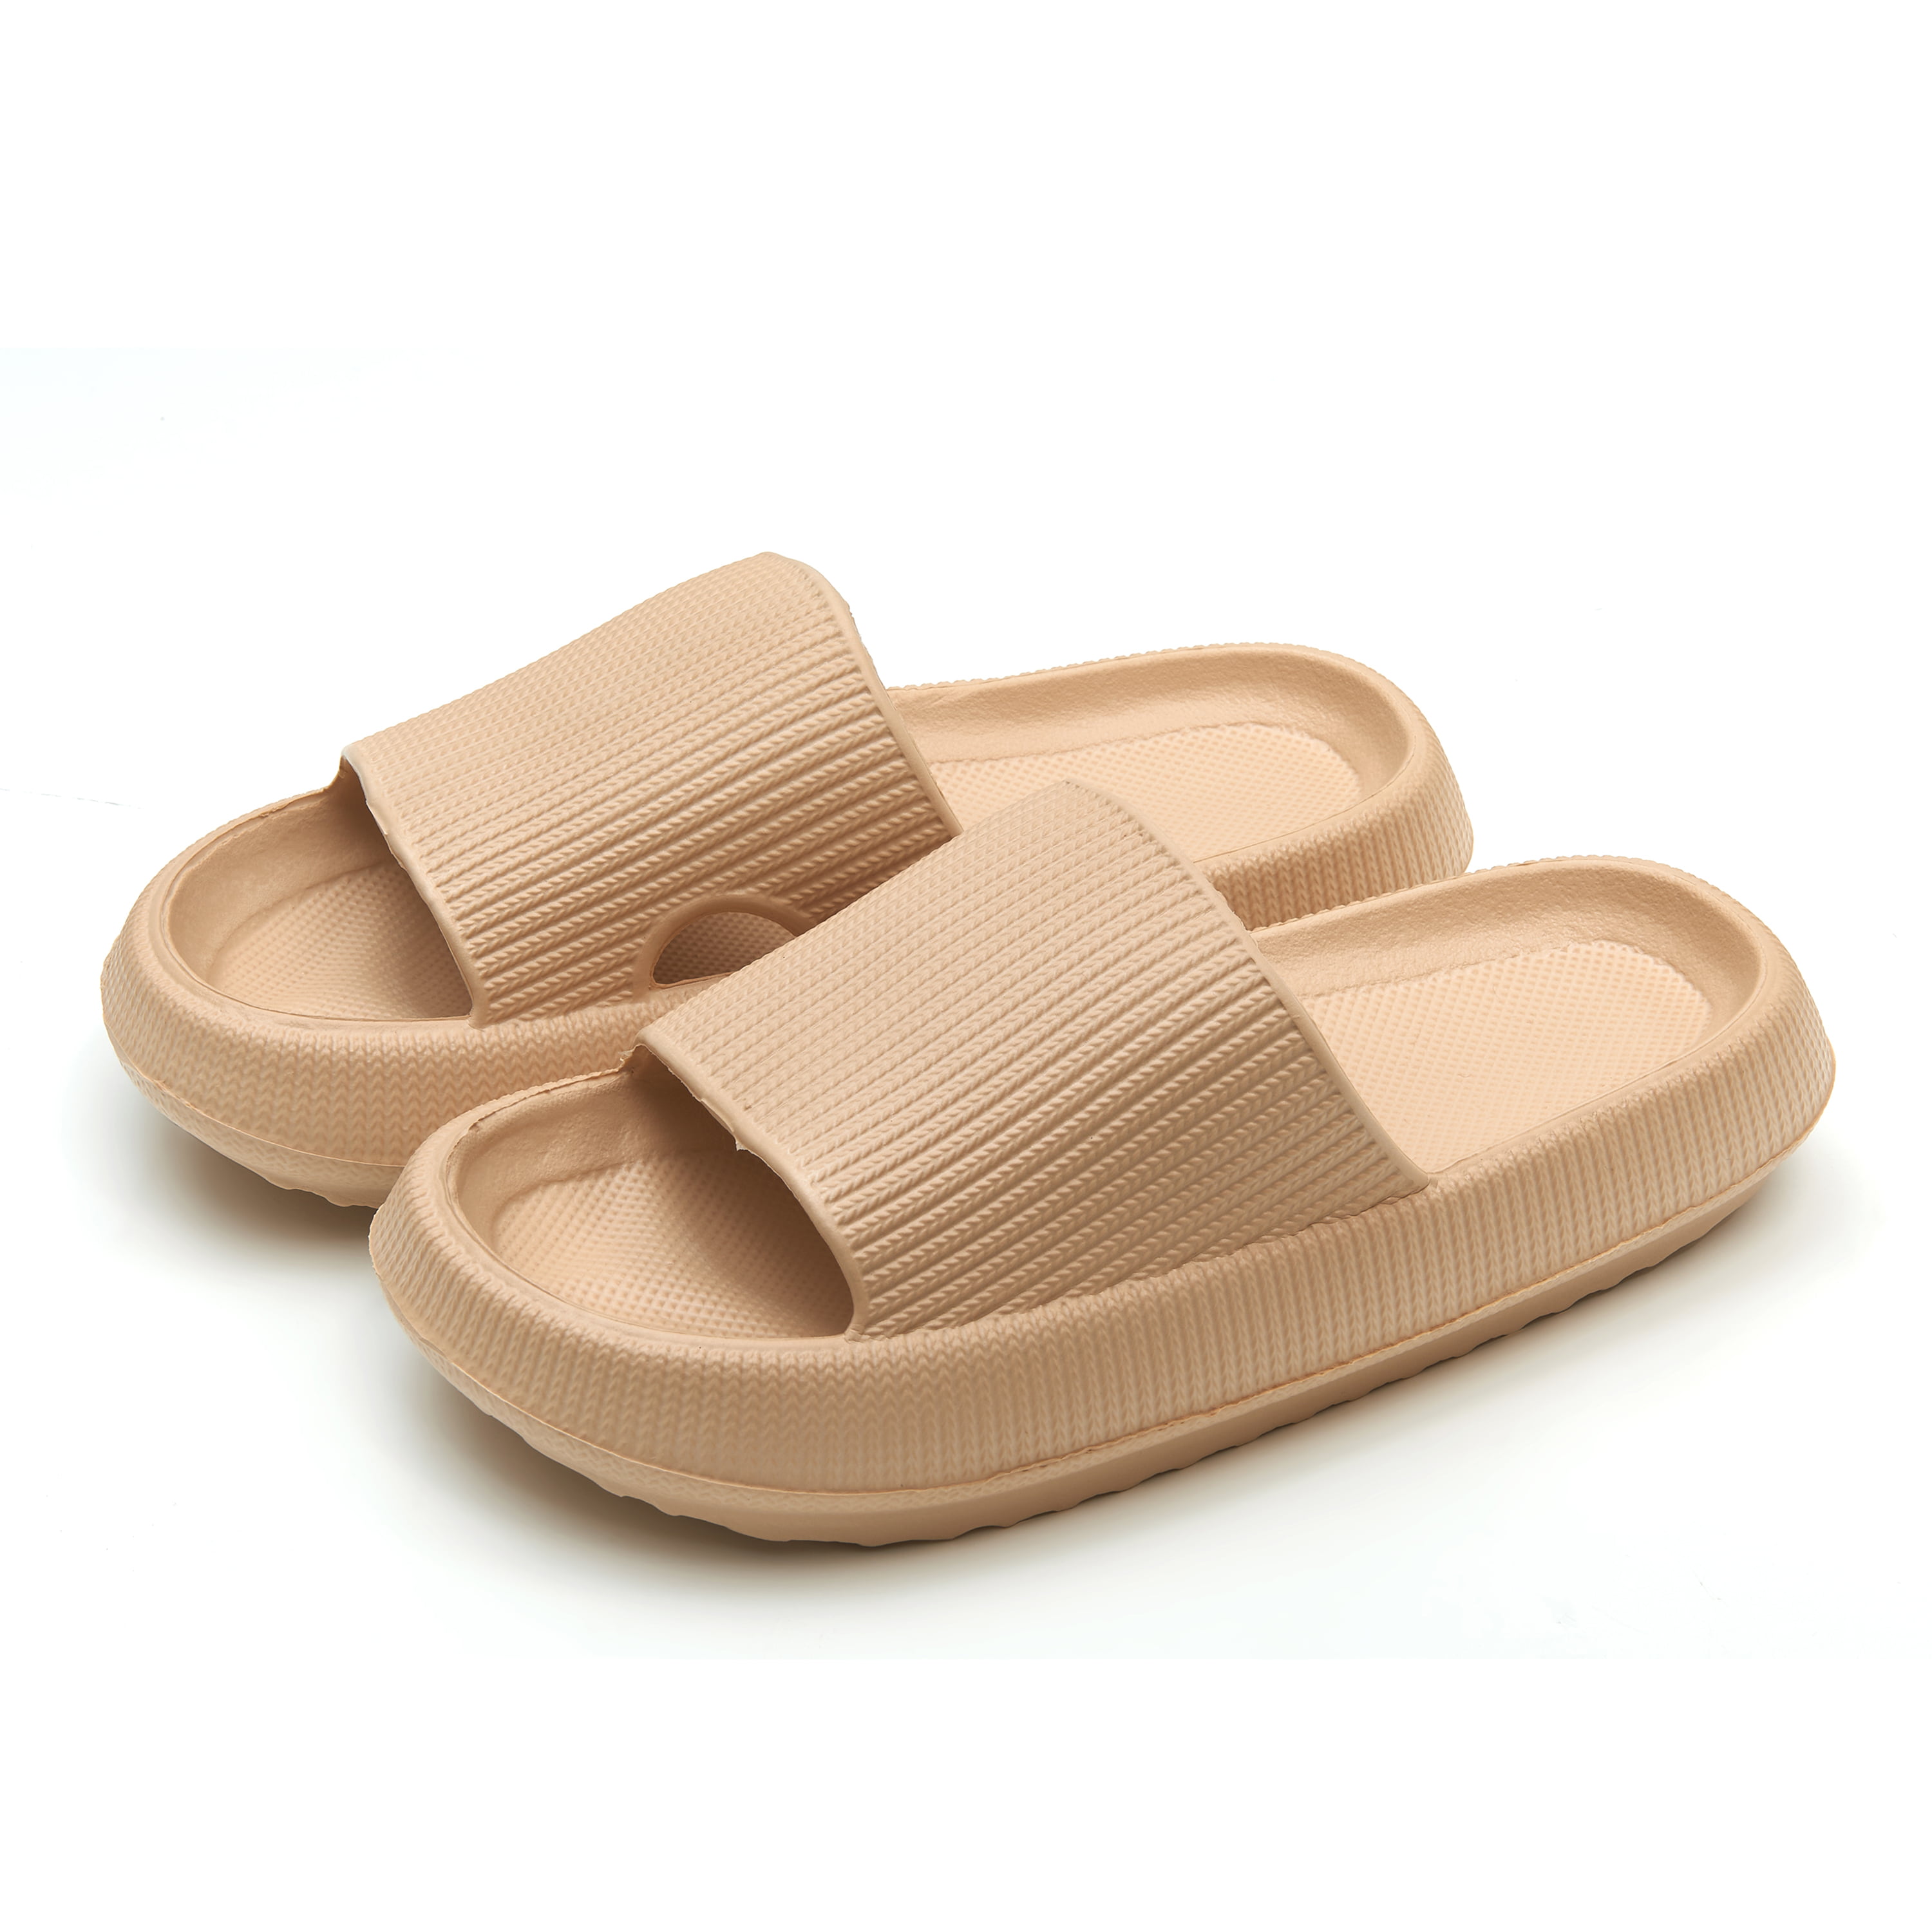 Somdot Slides Sandals for Women and Men Pillow Slippers Unisex Bathroom ...